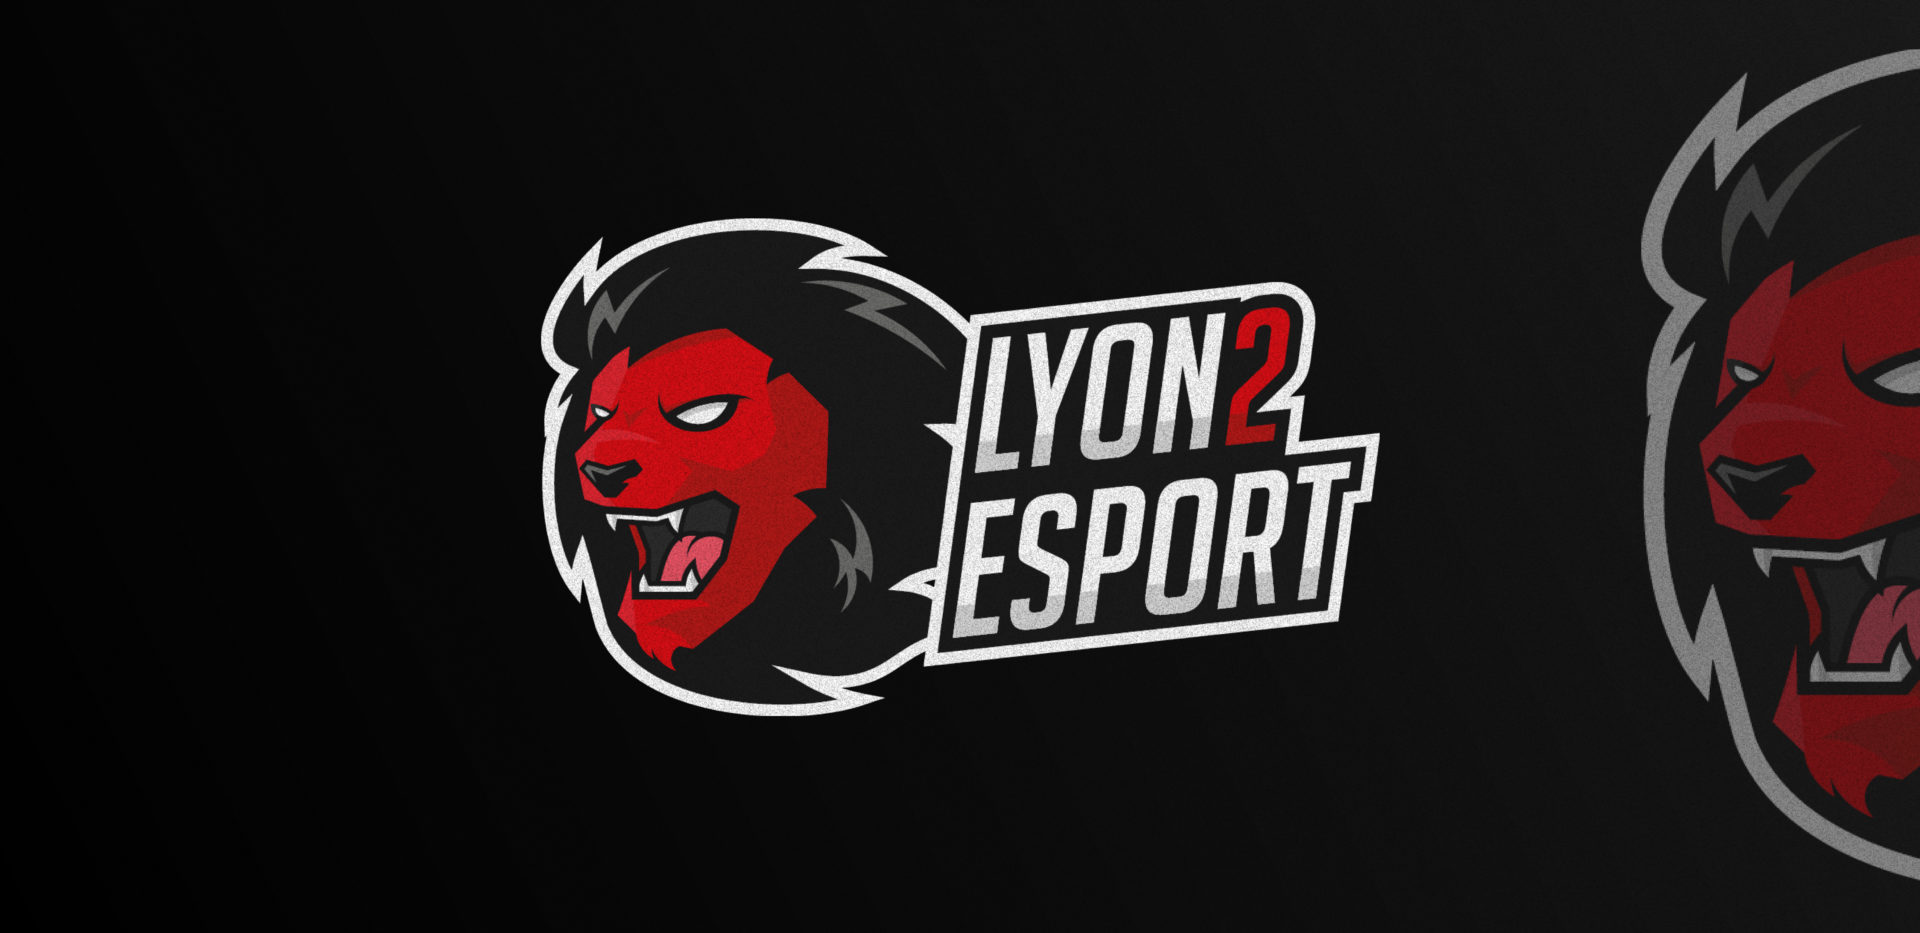 Lyon 2 Esport logo